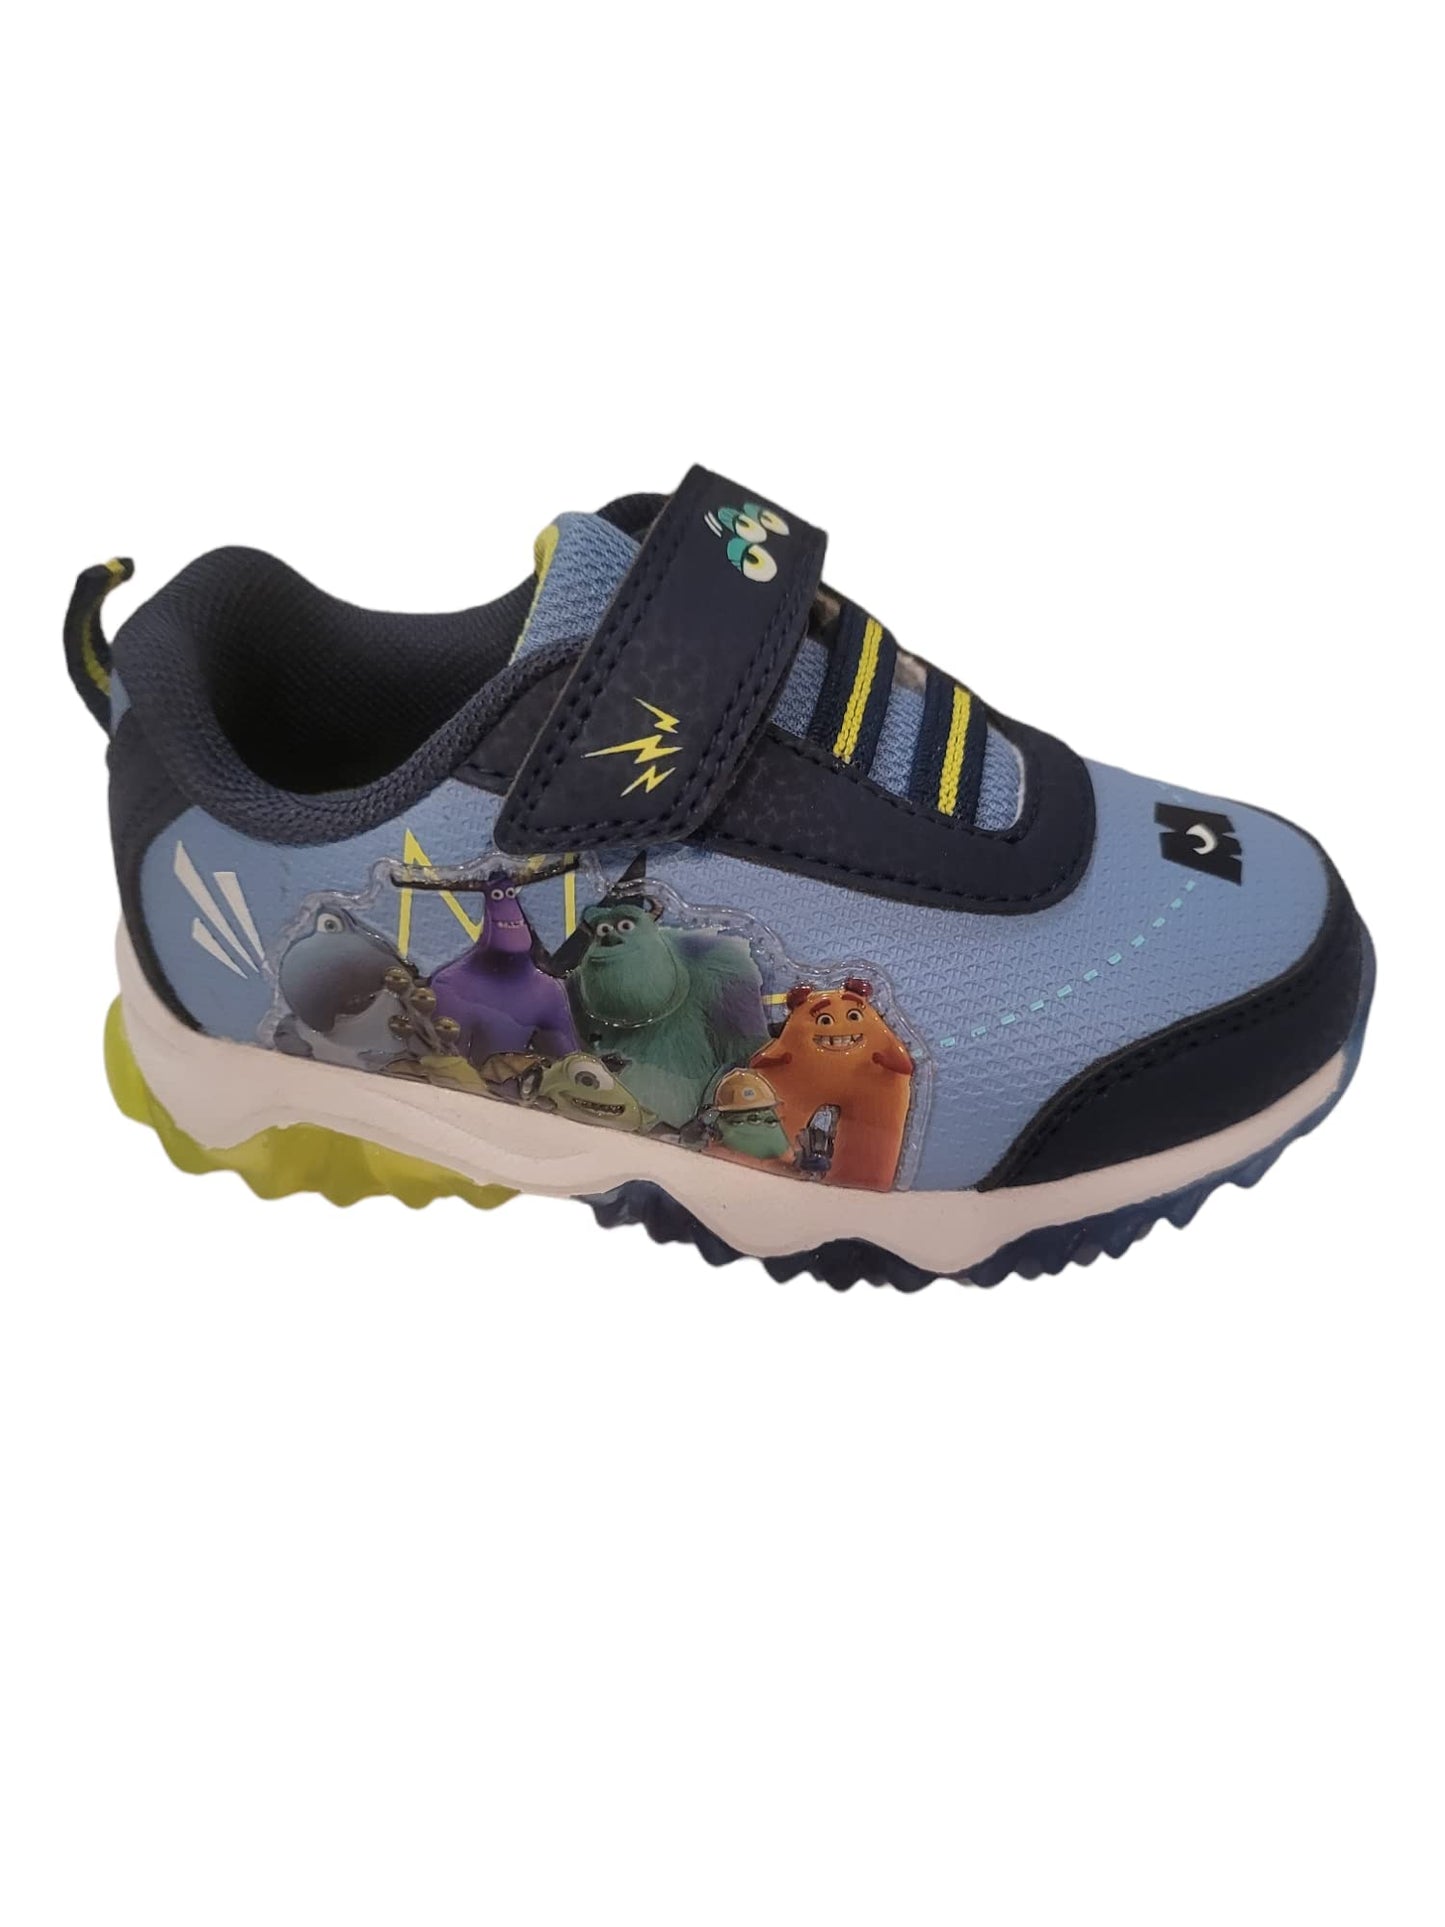 Disney Monster University Boy's Lighted Athletic Sneaker (Toddler/Little Kid)